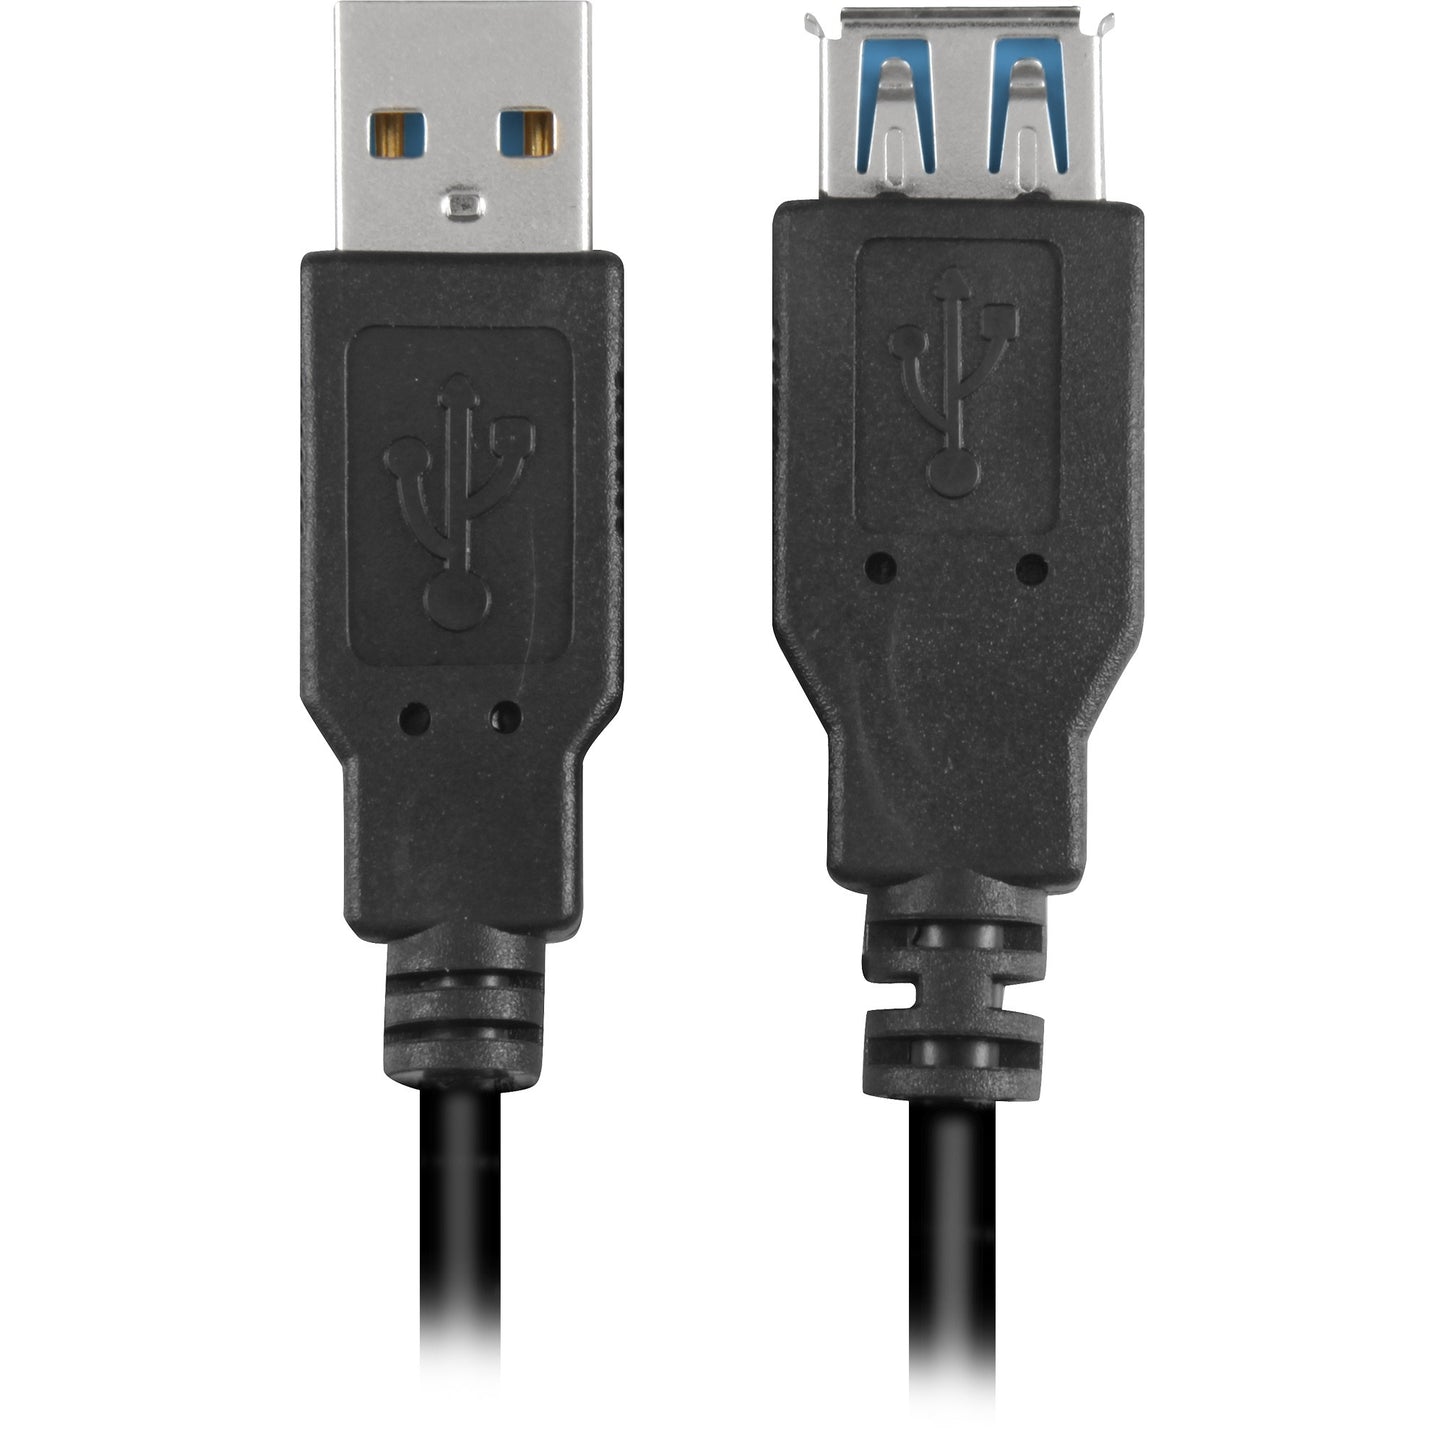 Sharkoon USB 3.0